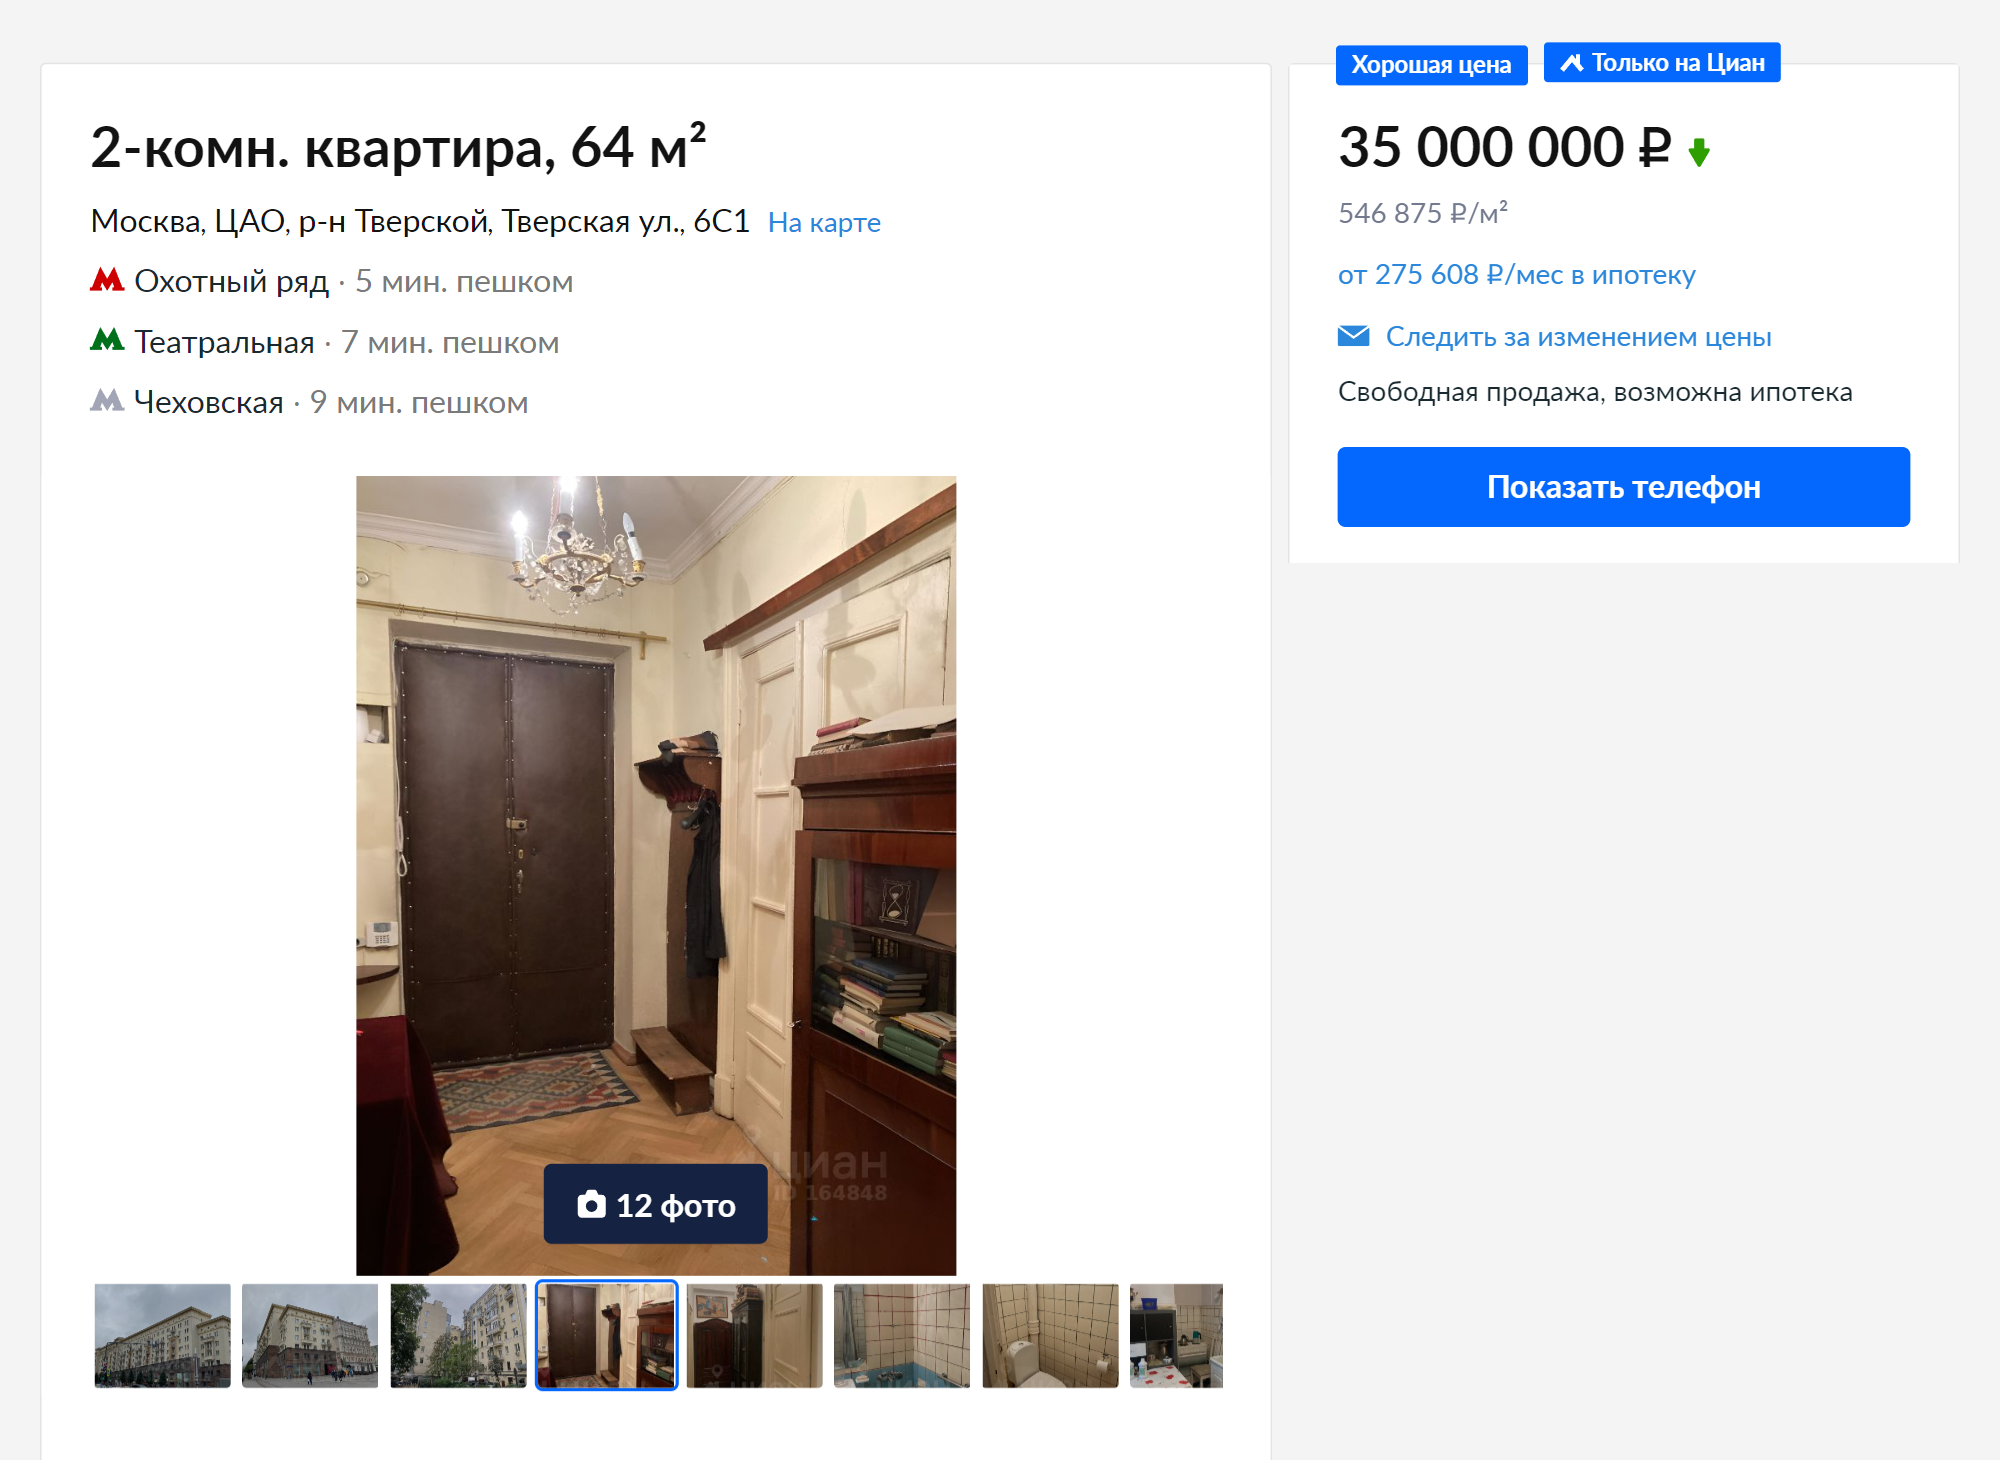 Квартиры, в которых я бы хотел жить с семьей, стоят около 30⁠—⁠40 млн за двушку площадью 50⁠—⁠60 м². Это квартиры в сталинках с потолками от трех метров, паркетом и не слишком большим вмешательством предыдущих хозяев в оригинальную архитектуру. Источник: cian.ru